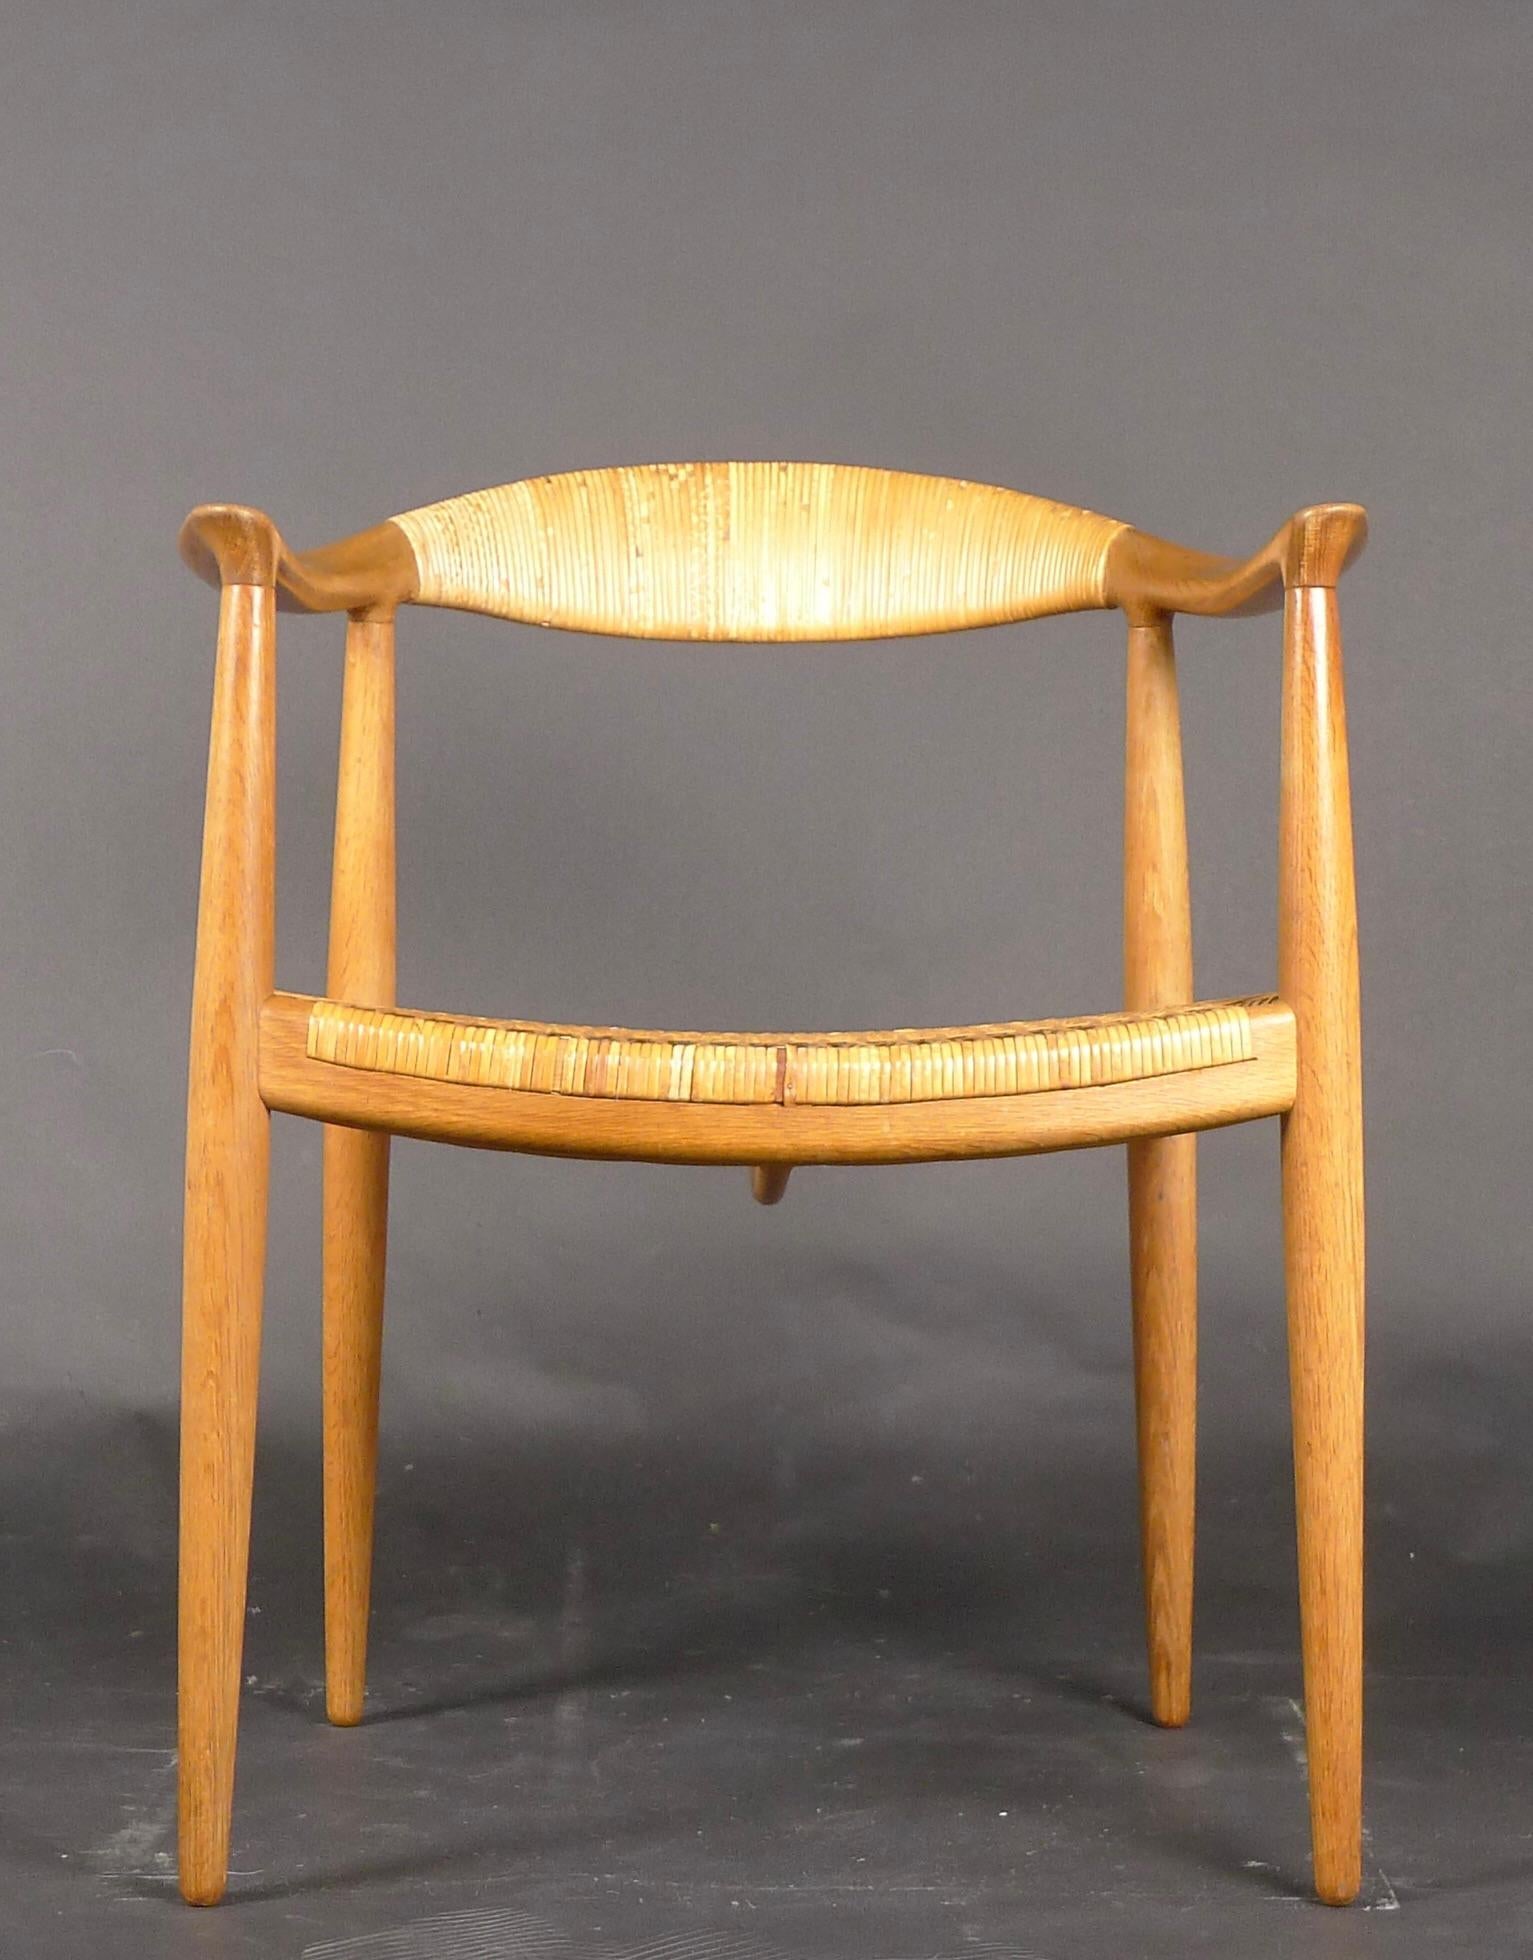 Bekannt als The Round Chair oder einfach The Chair, entwarf Hans J. Wegner den Entwurf für Johannes Hansen, um ihn auf der Jahresausstellung der Copenhagen Cabinetmakers' Guild 1949 auszustellen.  Die frühen Exemplare hatten eine Zapfenverbindung,